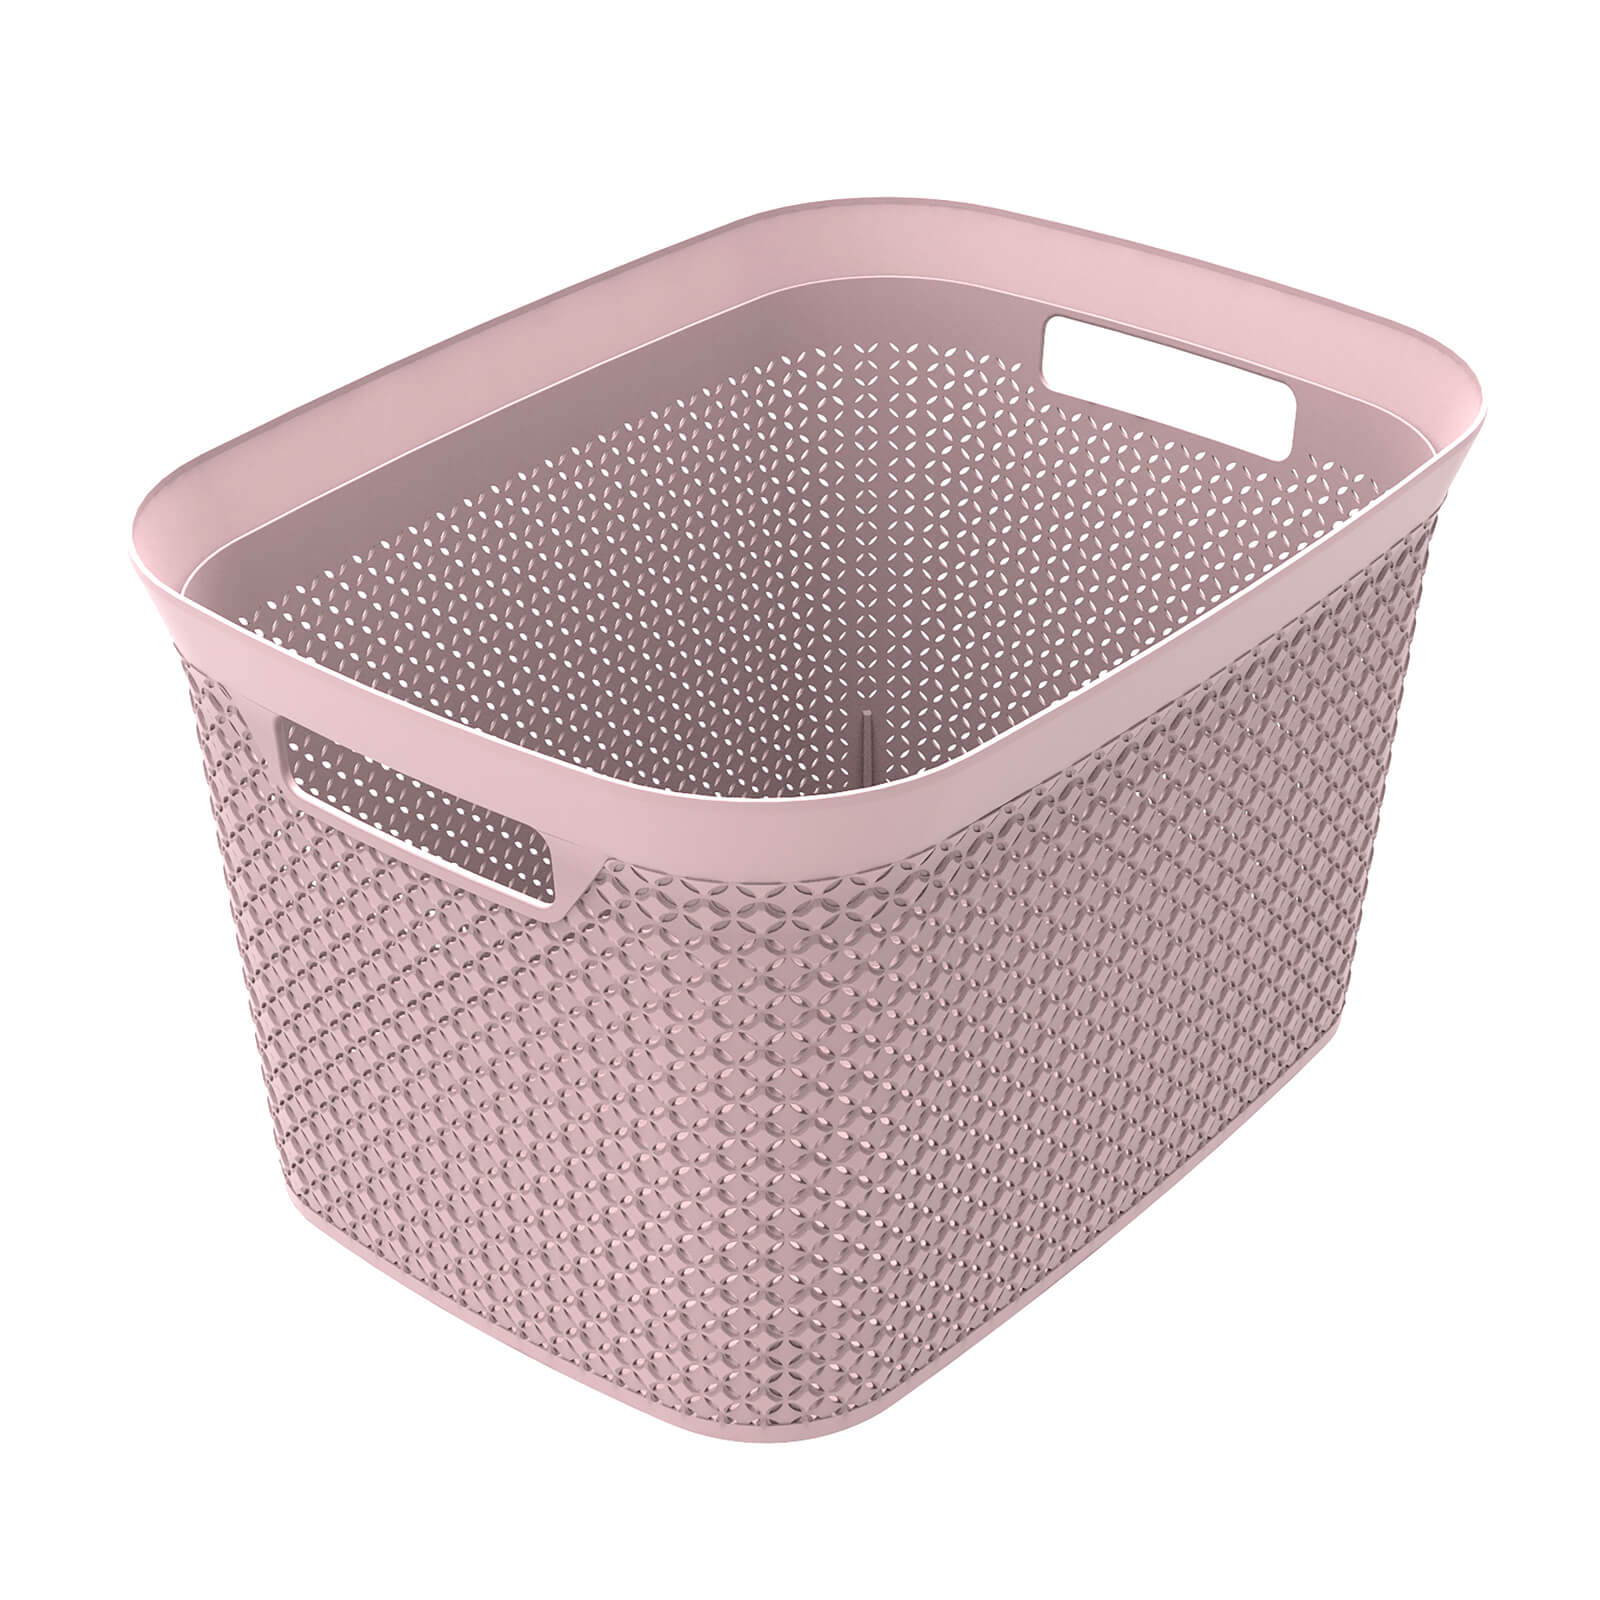 Ezy Storage Mode 25L Open Basket - Blush